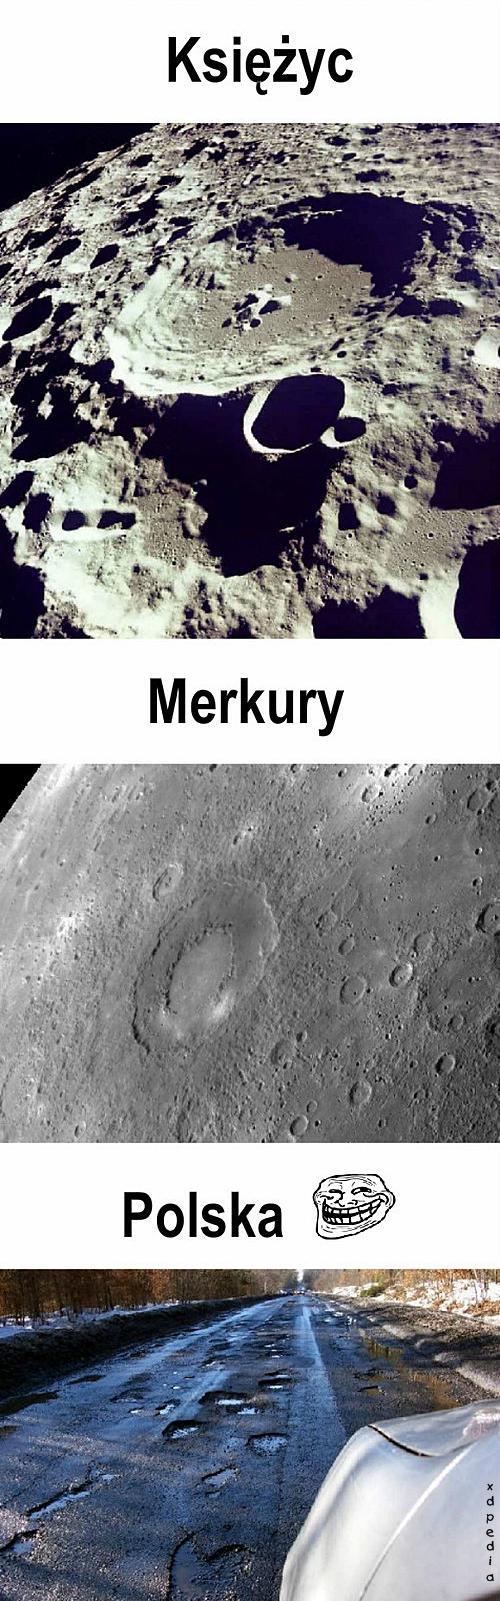 Księżyc, Merkury, Polska...